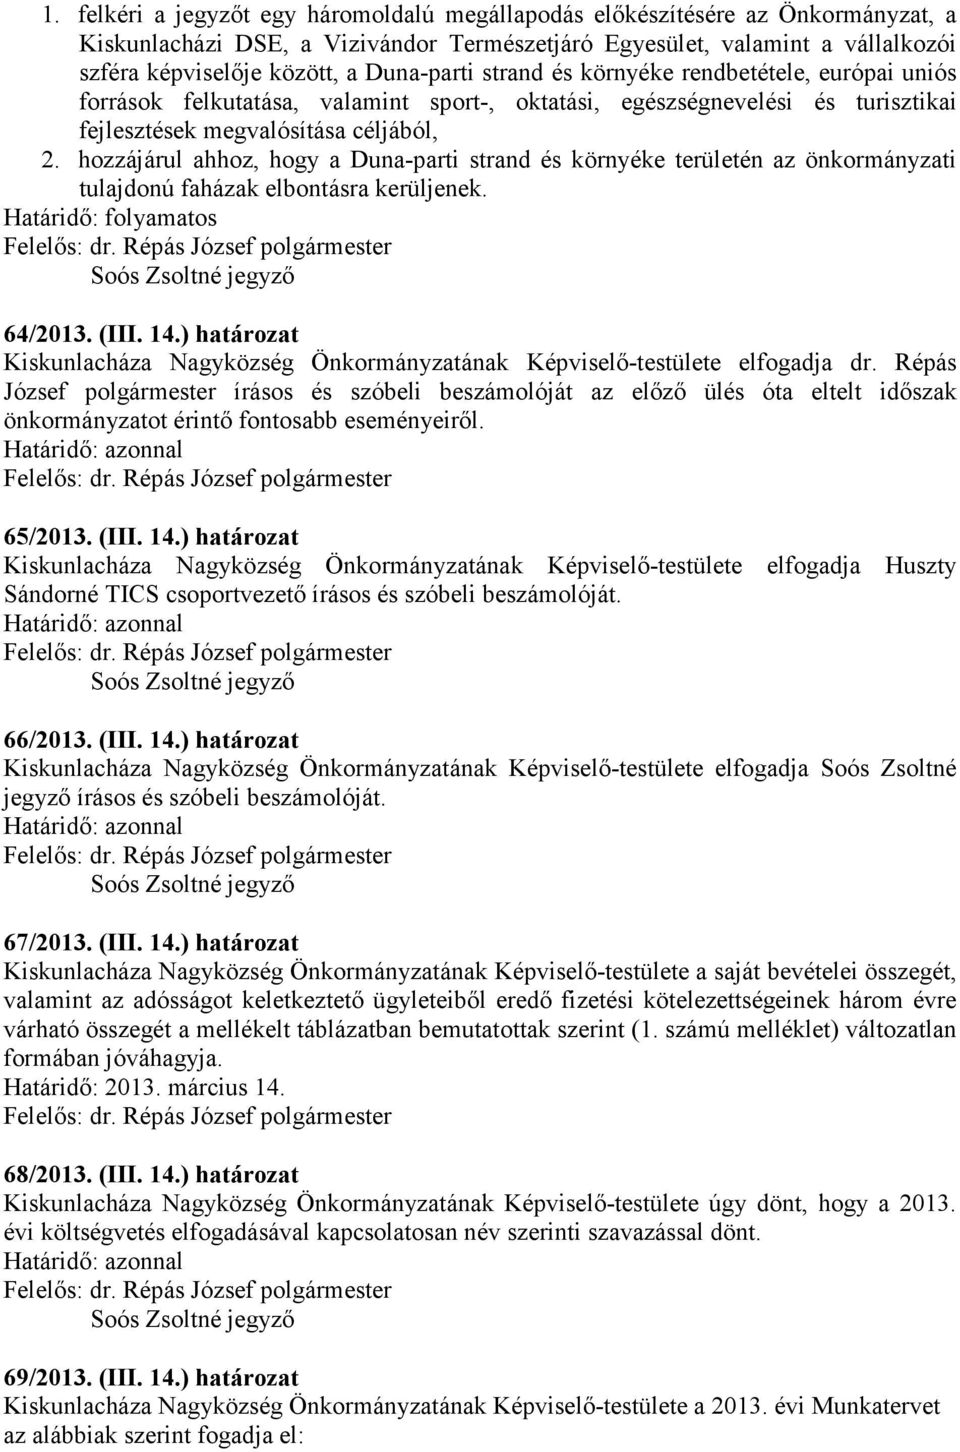 hozzájárul ahhoz, hogy a Duna-parti strand és környéke területén az önkormányzati tulajdonú faházak elbontásra kerüljenek. Határidő: folyamatos 64/2013. (III. 14.